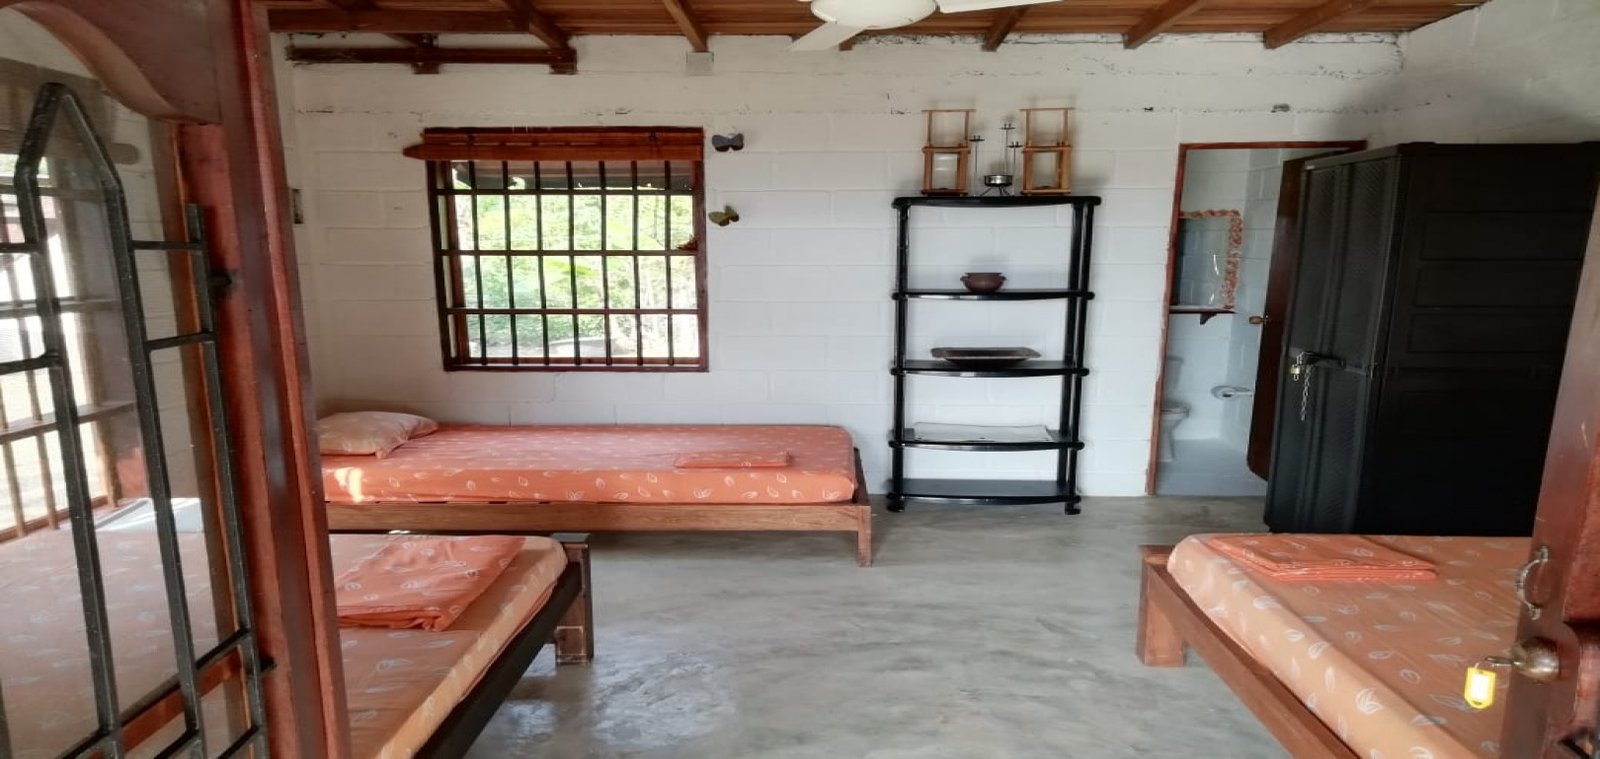 Chocó, 3 Habitaciones Habitaciones, ,Casa,Venta,1139